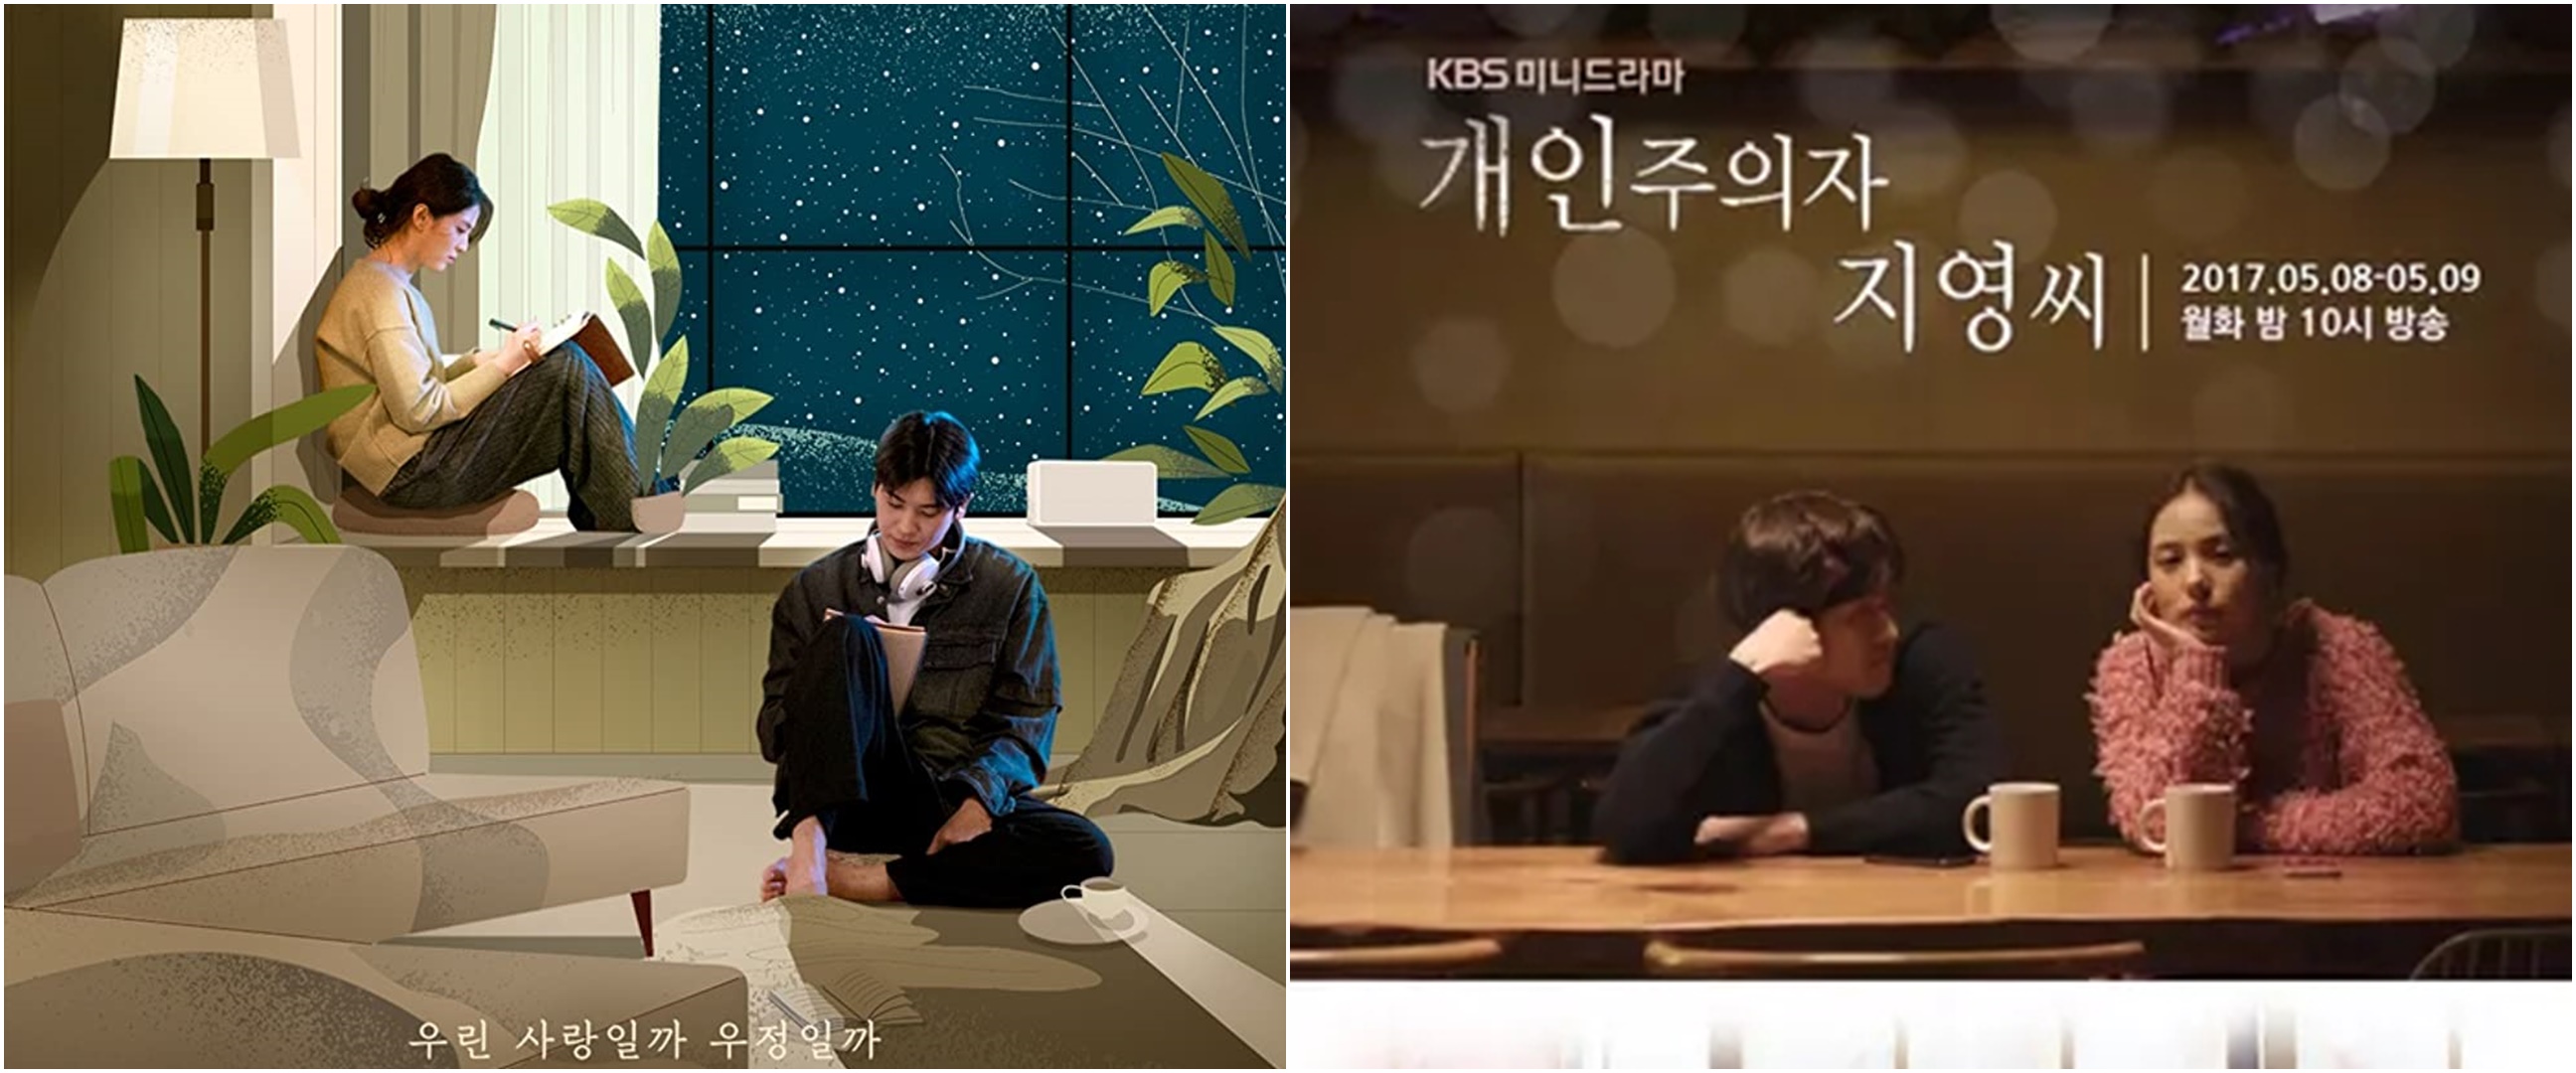 11 Rekomendasi drama Korea dengan episode pendek, ceritanya tetap seru